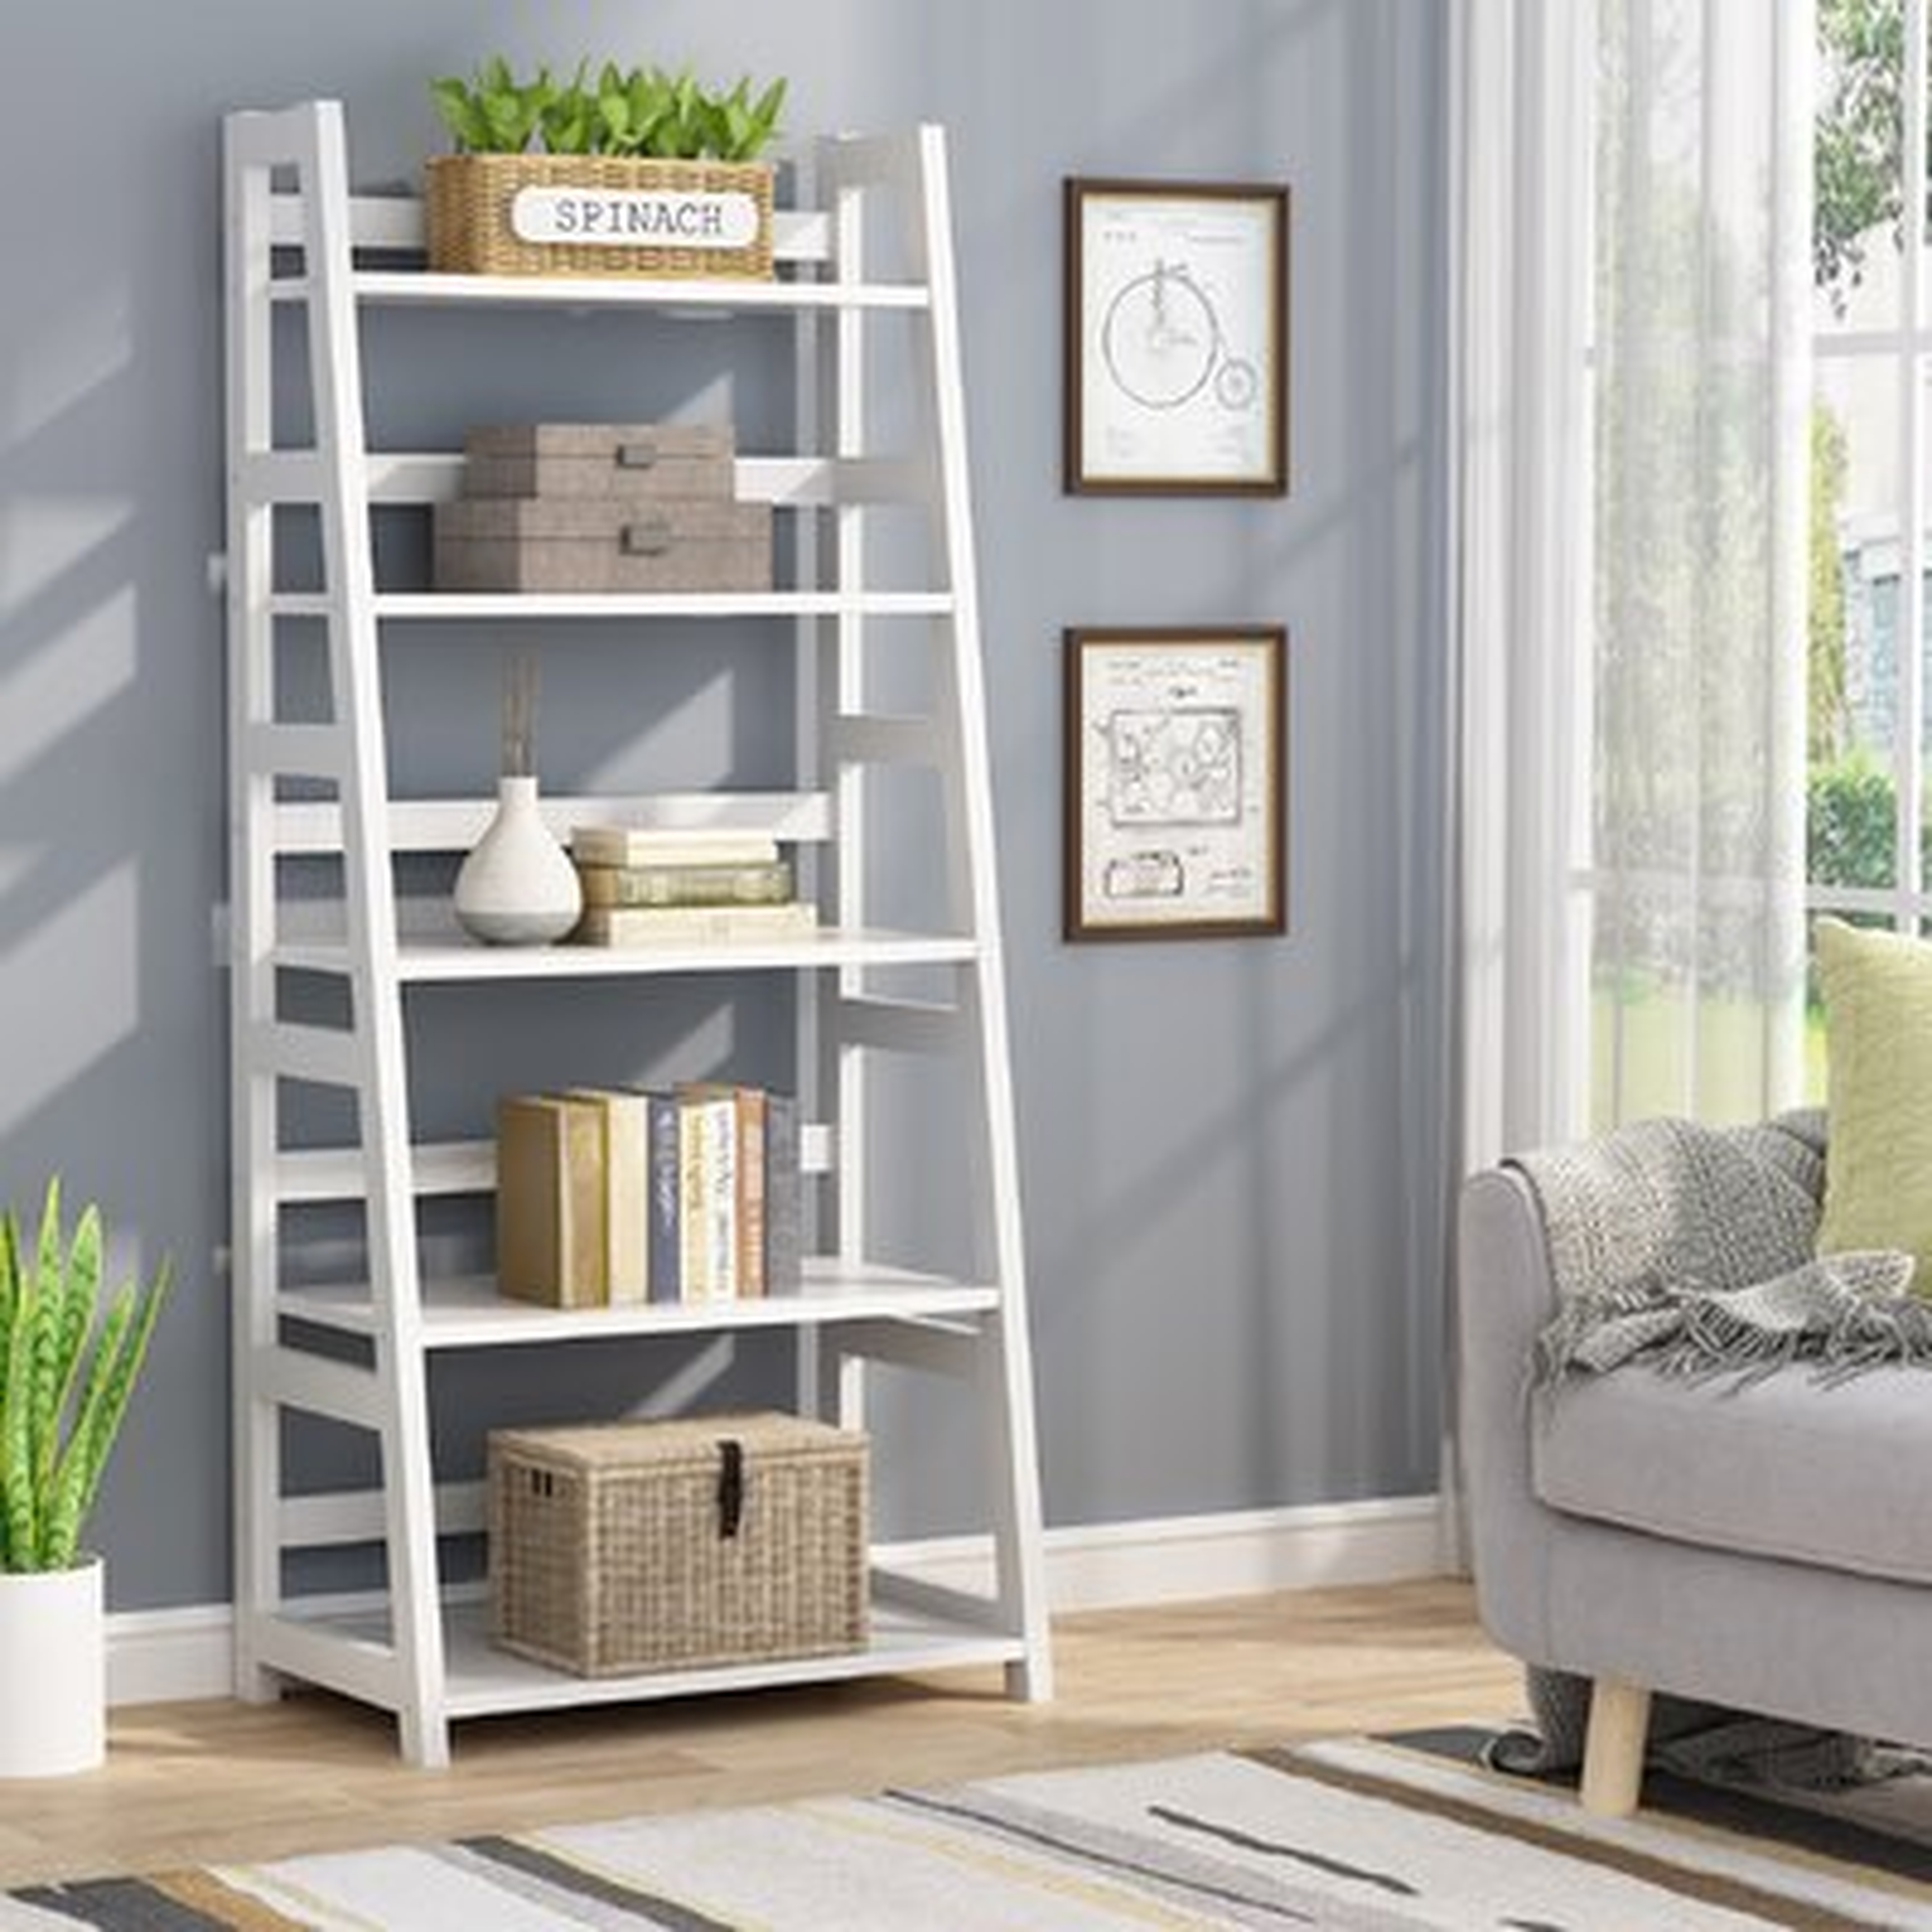 Gayann 56.49" H x 23.62' W Stainless Steel Ladder Bookcase - Wayfair